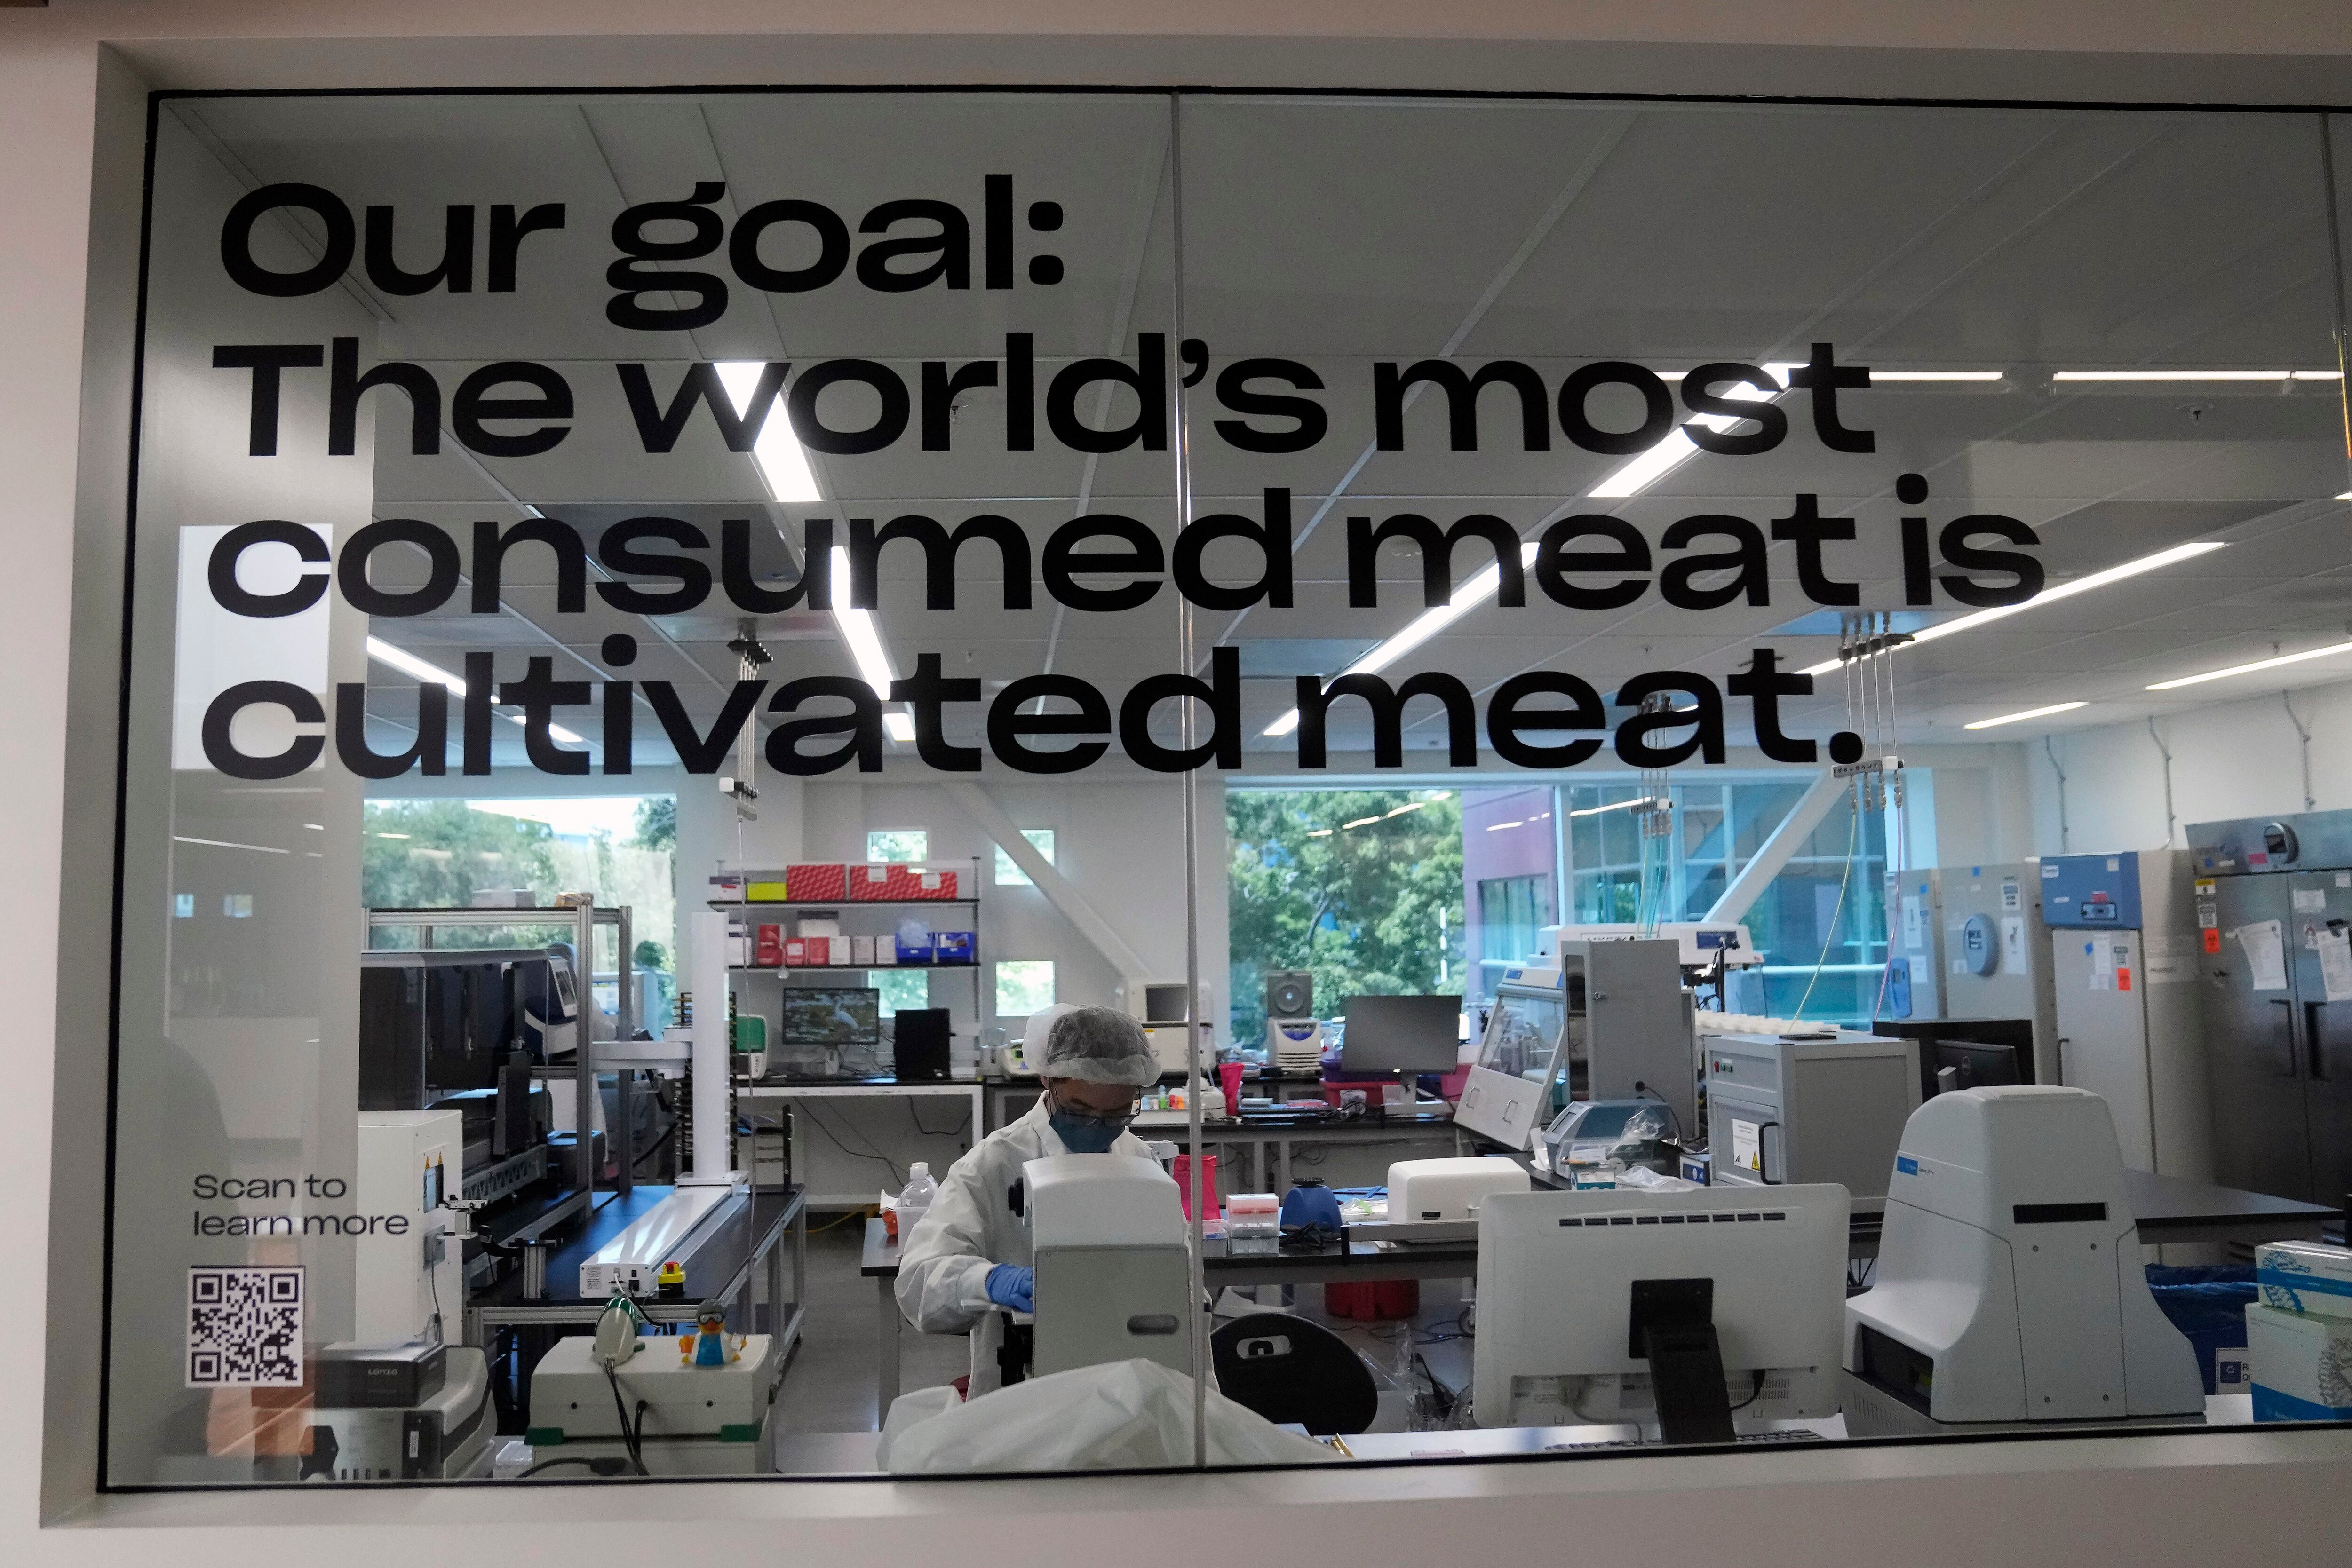 Laboratorio de Eat Just en Alameda, California. Las letras del cristal señalan el objetivo de la empresa: que la carne cultivada sea la más consumida en el mundo.